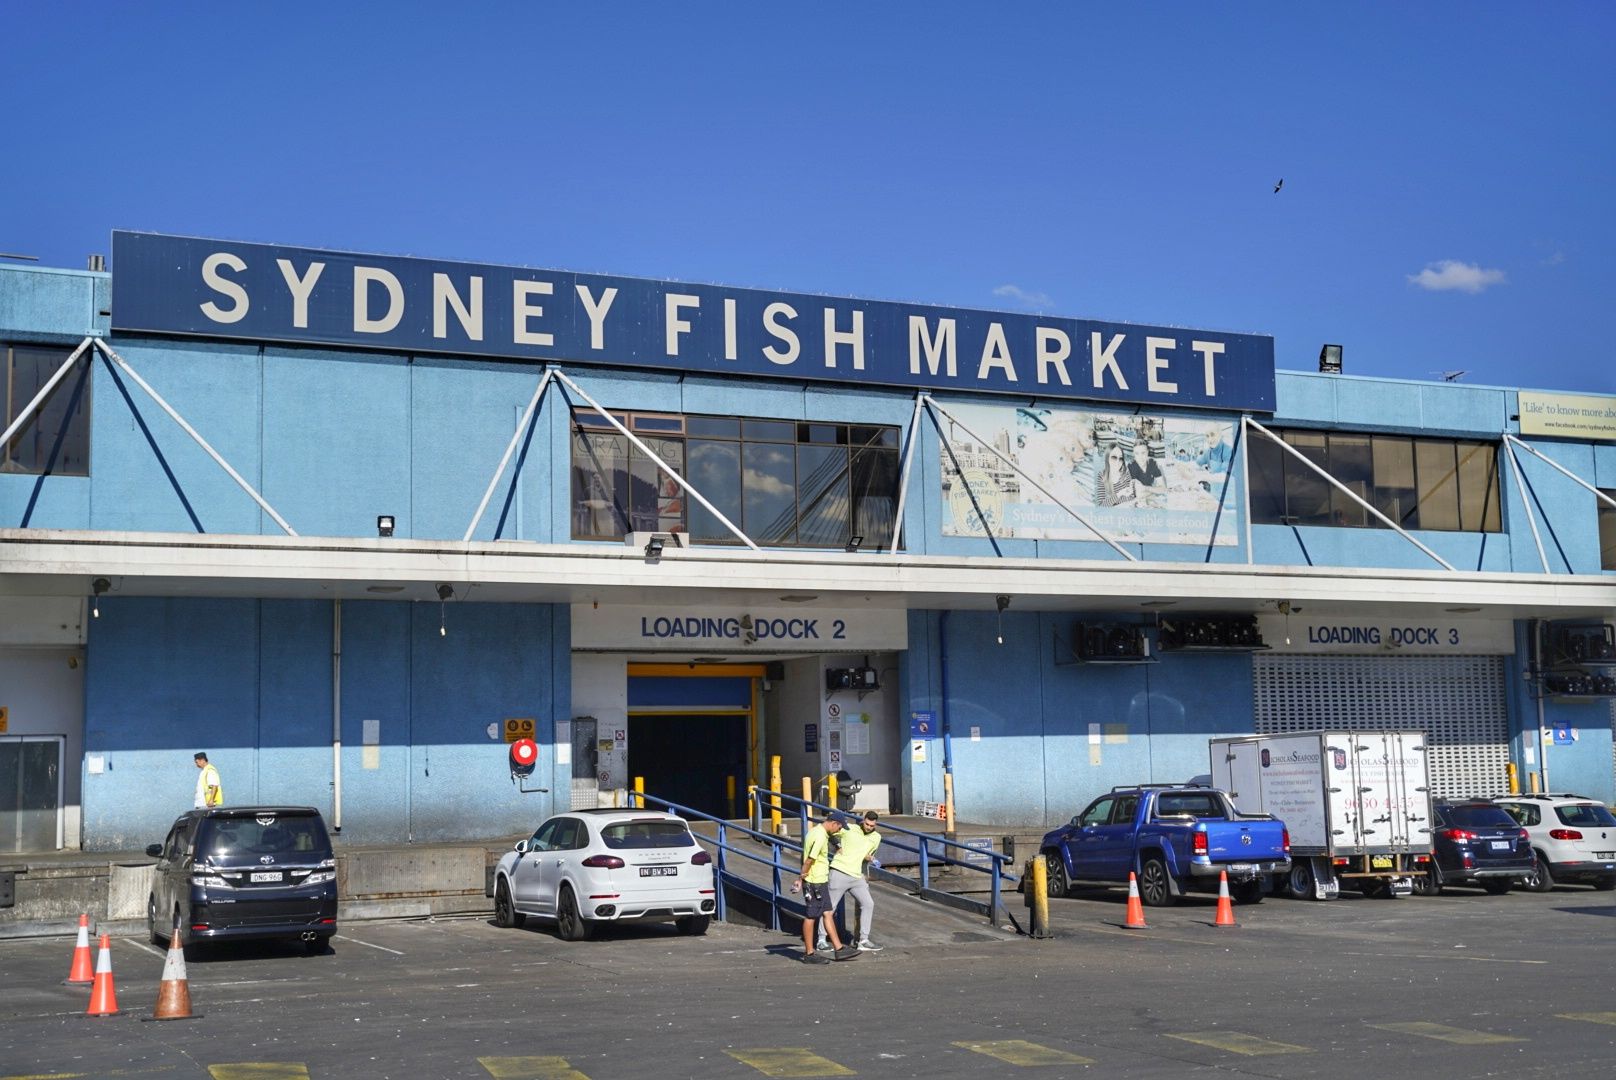 Đánh giá về địa điểm tham quan ở Sydney Fish Market - Vé Sydney Fish Market - Giảm giá ở Sydney Fish Market - giao thông ở Sydney Fish Market, địa chỉ,